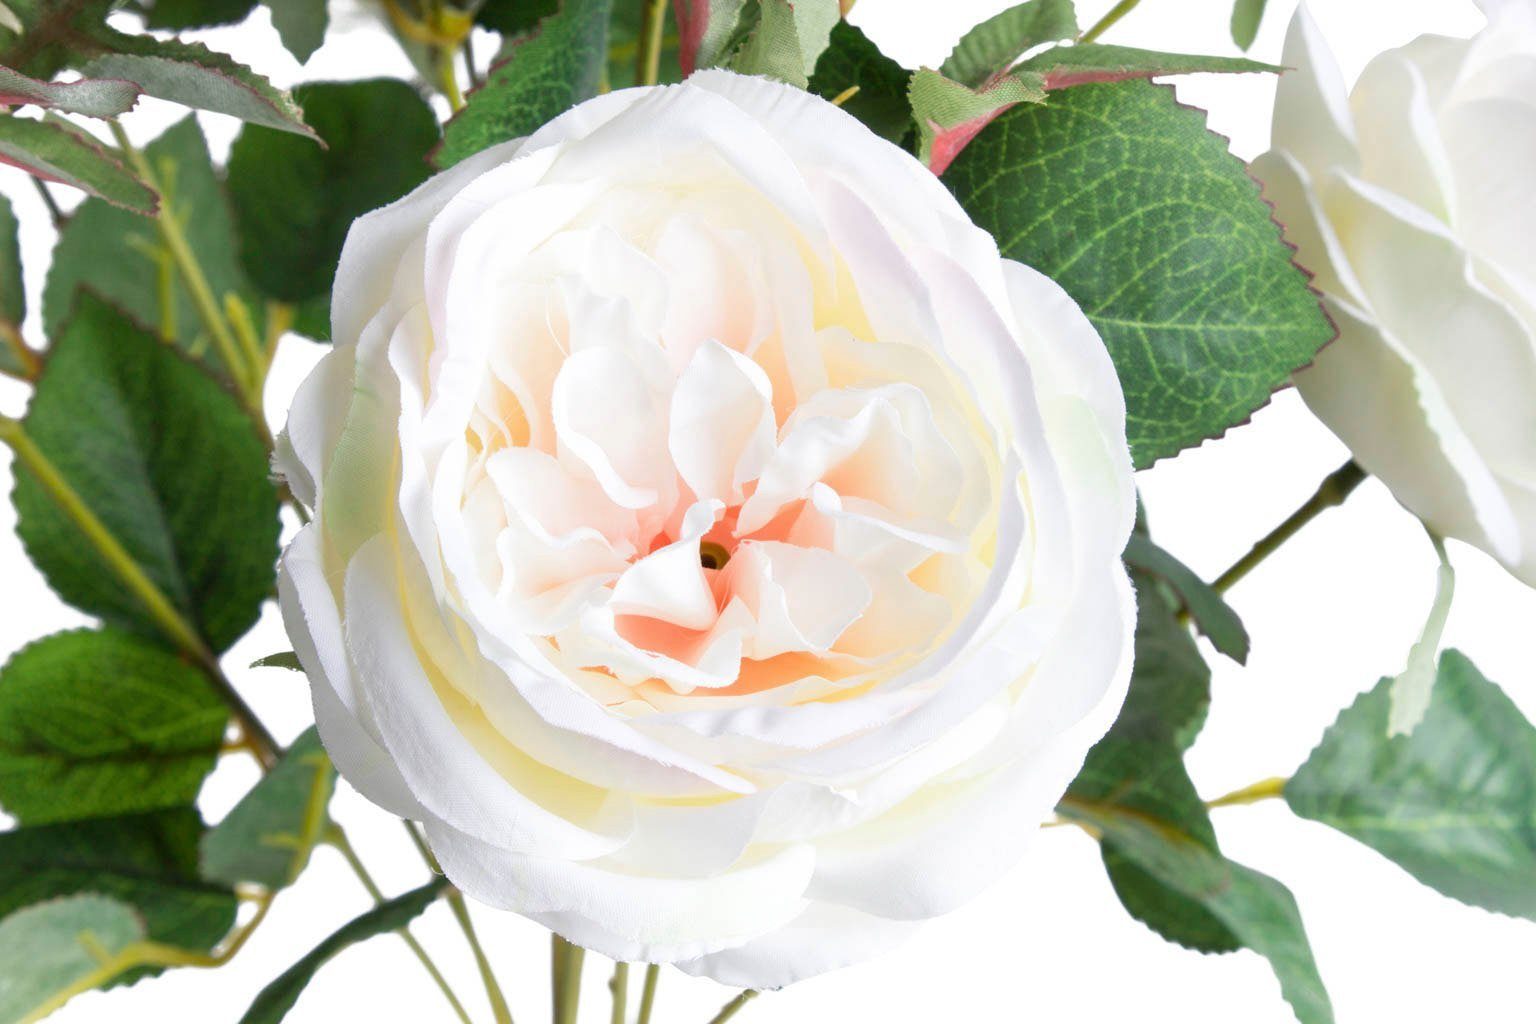 Kunstblume Englischer Rosenbusch Rose, cm 46 Höhe Botanic-Haus